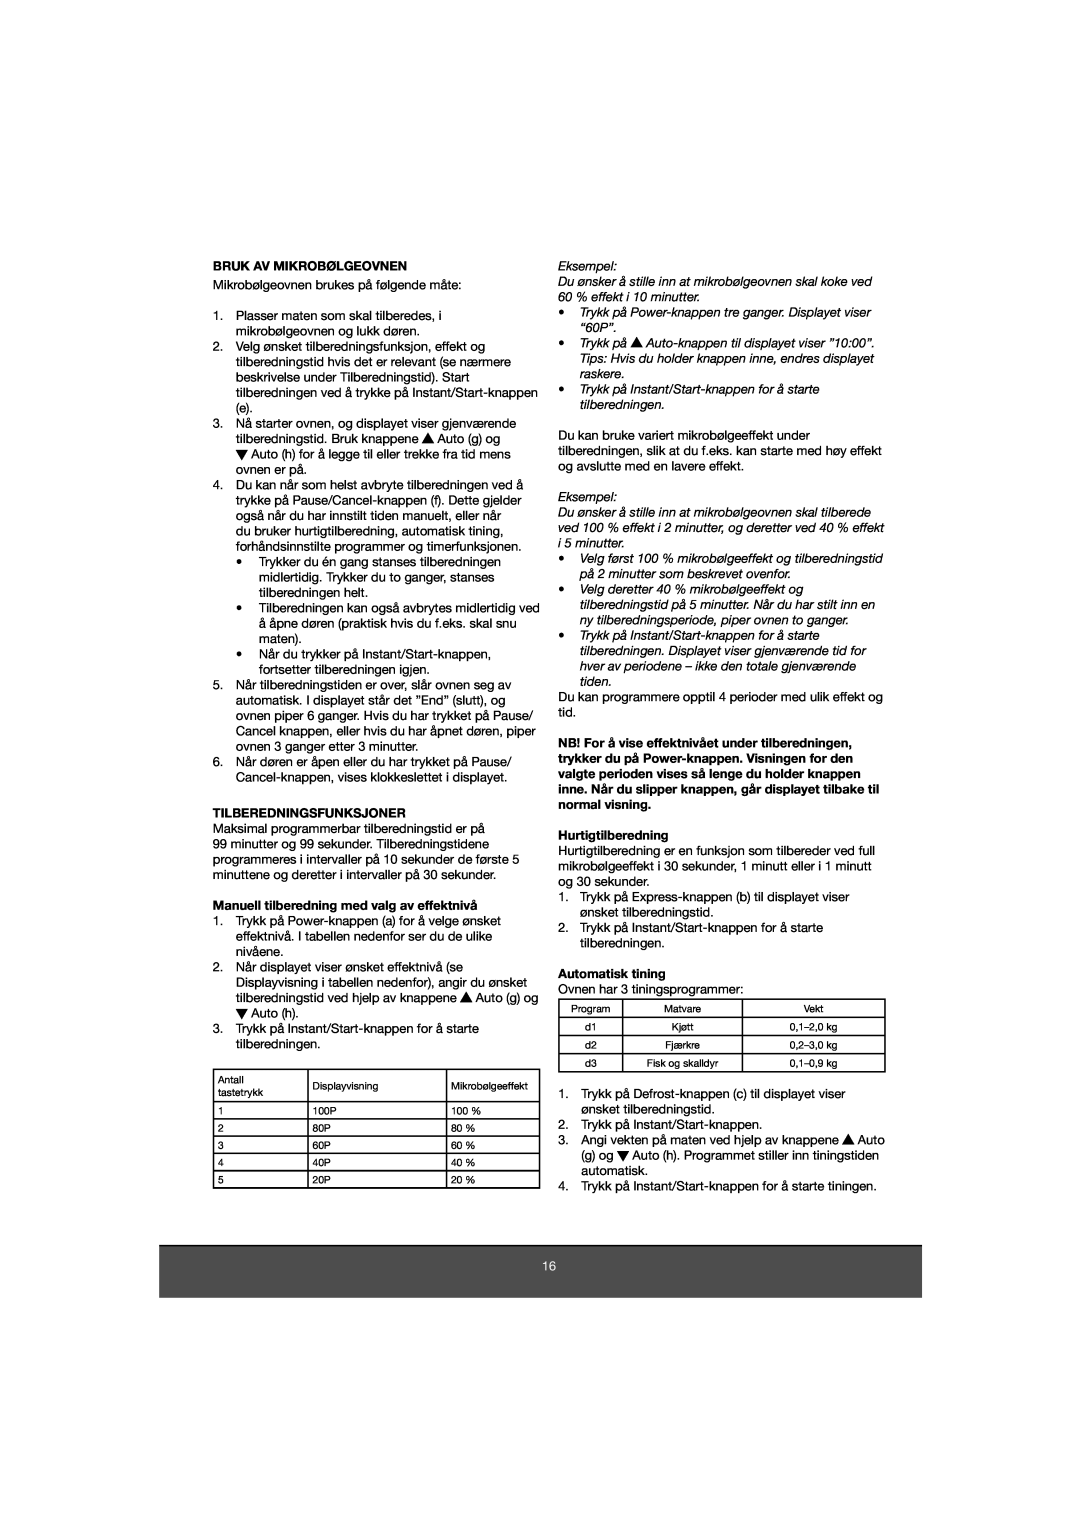 Melissa 653-081 manual Bruk Av Mikrobølgeovnen, Tilberedningsfunksjoner, Manuell tilberedning med valg av effektnivå 